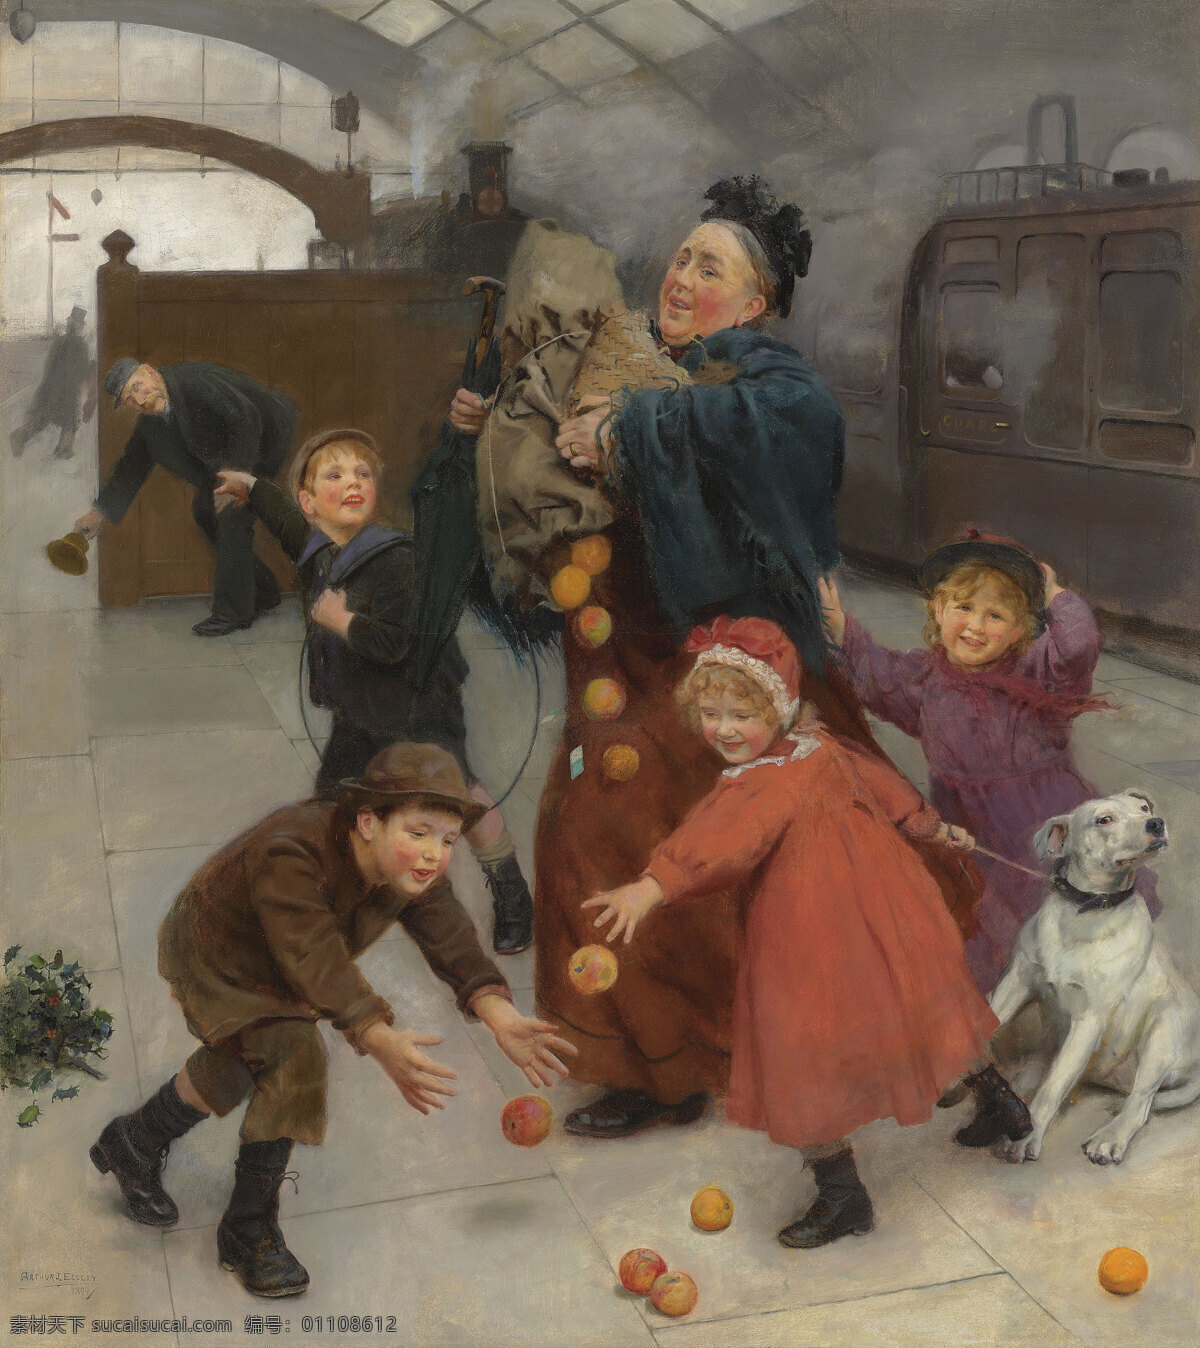 亚瑟 约翰 埃尔斯利作品 英国画家 欲速则不达 火车进站 四个孩子 玩闹 老年妇人 忙作一团 19世纪油画 油画 文化艺术 绘画书法